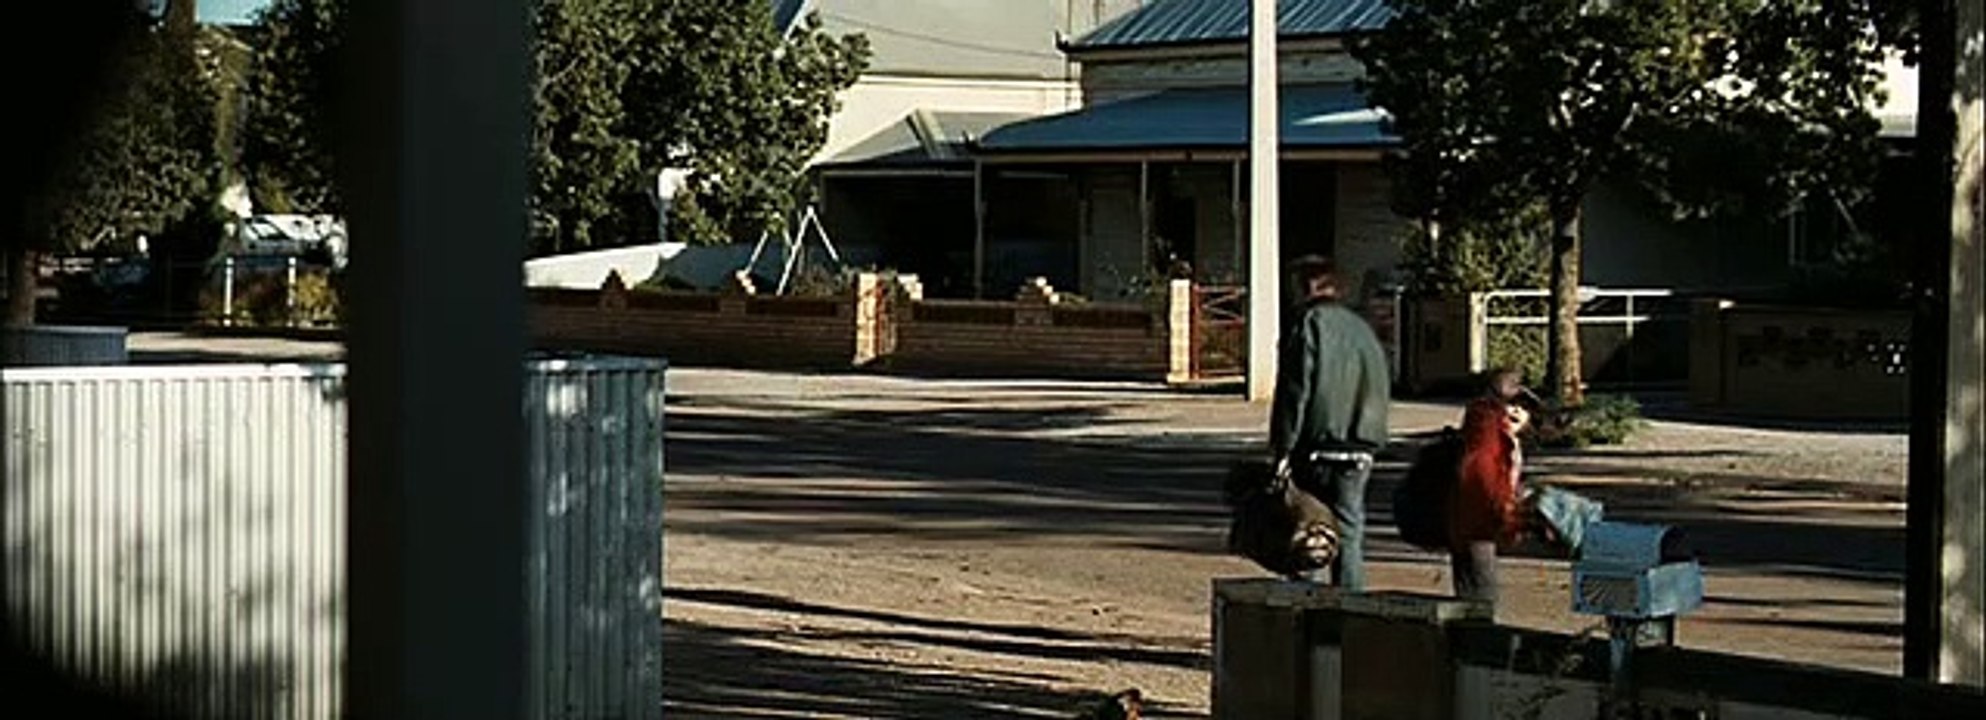 Last Ride Film Trailer (2009)